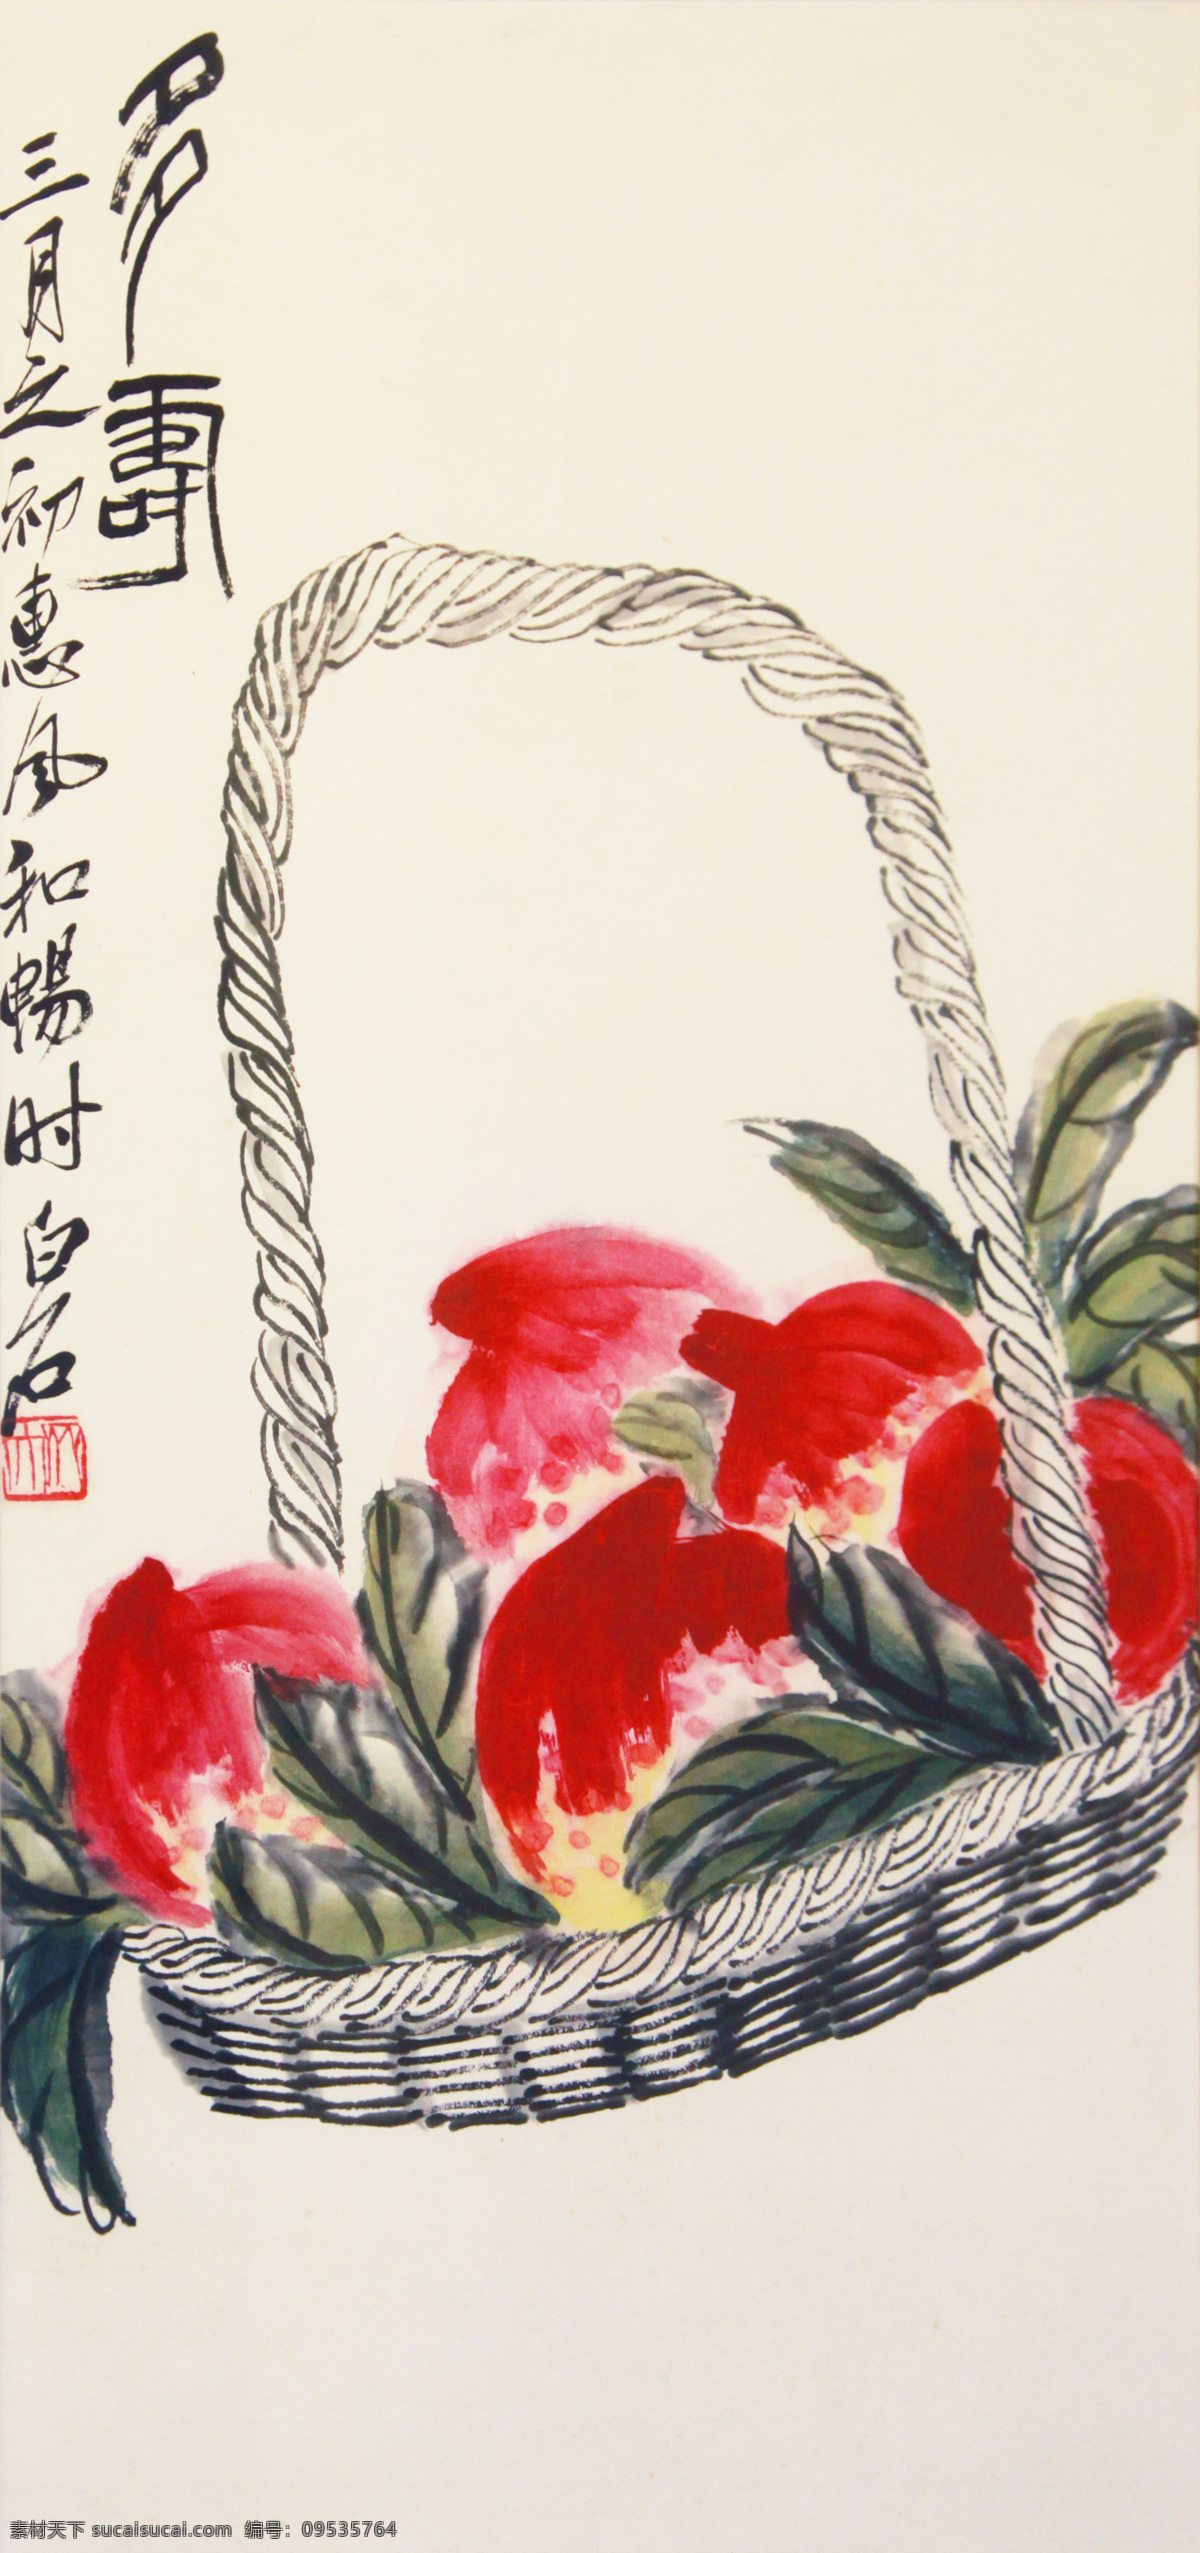 中国 传统 国画艺术 寿桃 国画 艺术 多寿 齐白石 文化艺术 传统文化